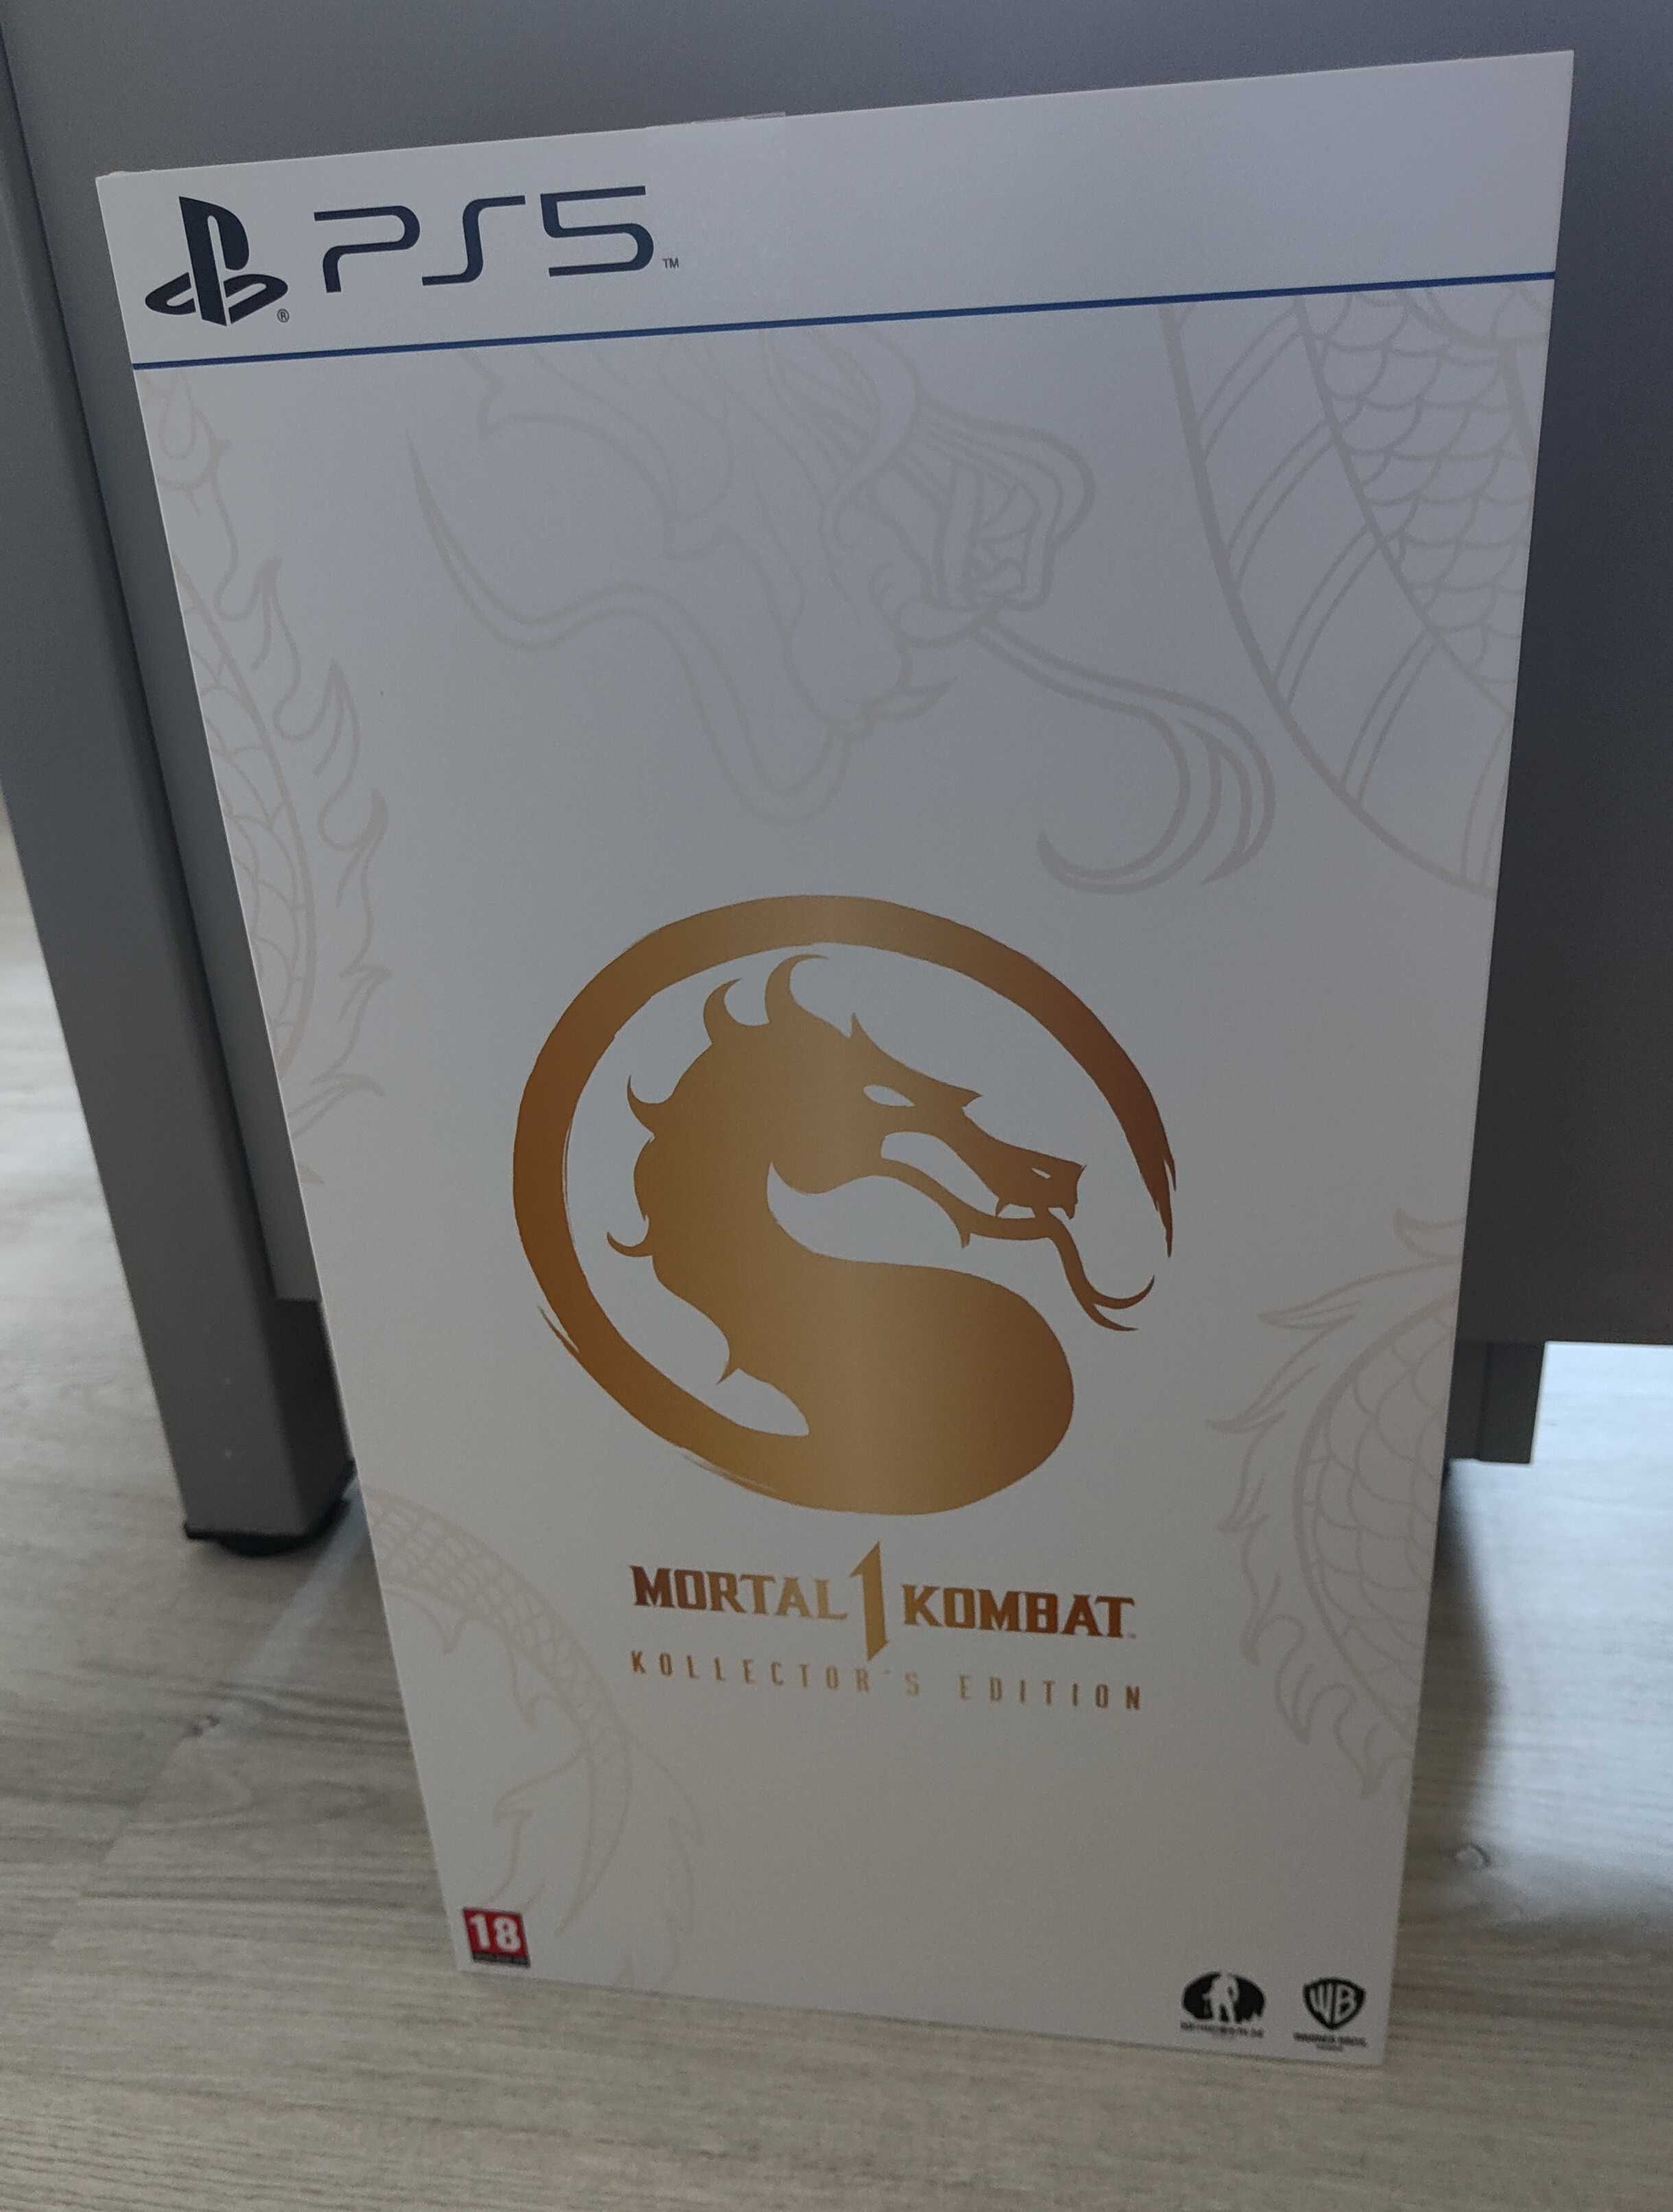 [PS5] Mortal Kombat 1 Kollectors Edition